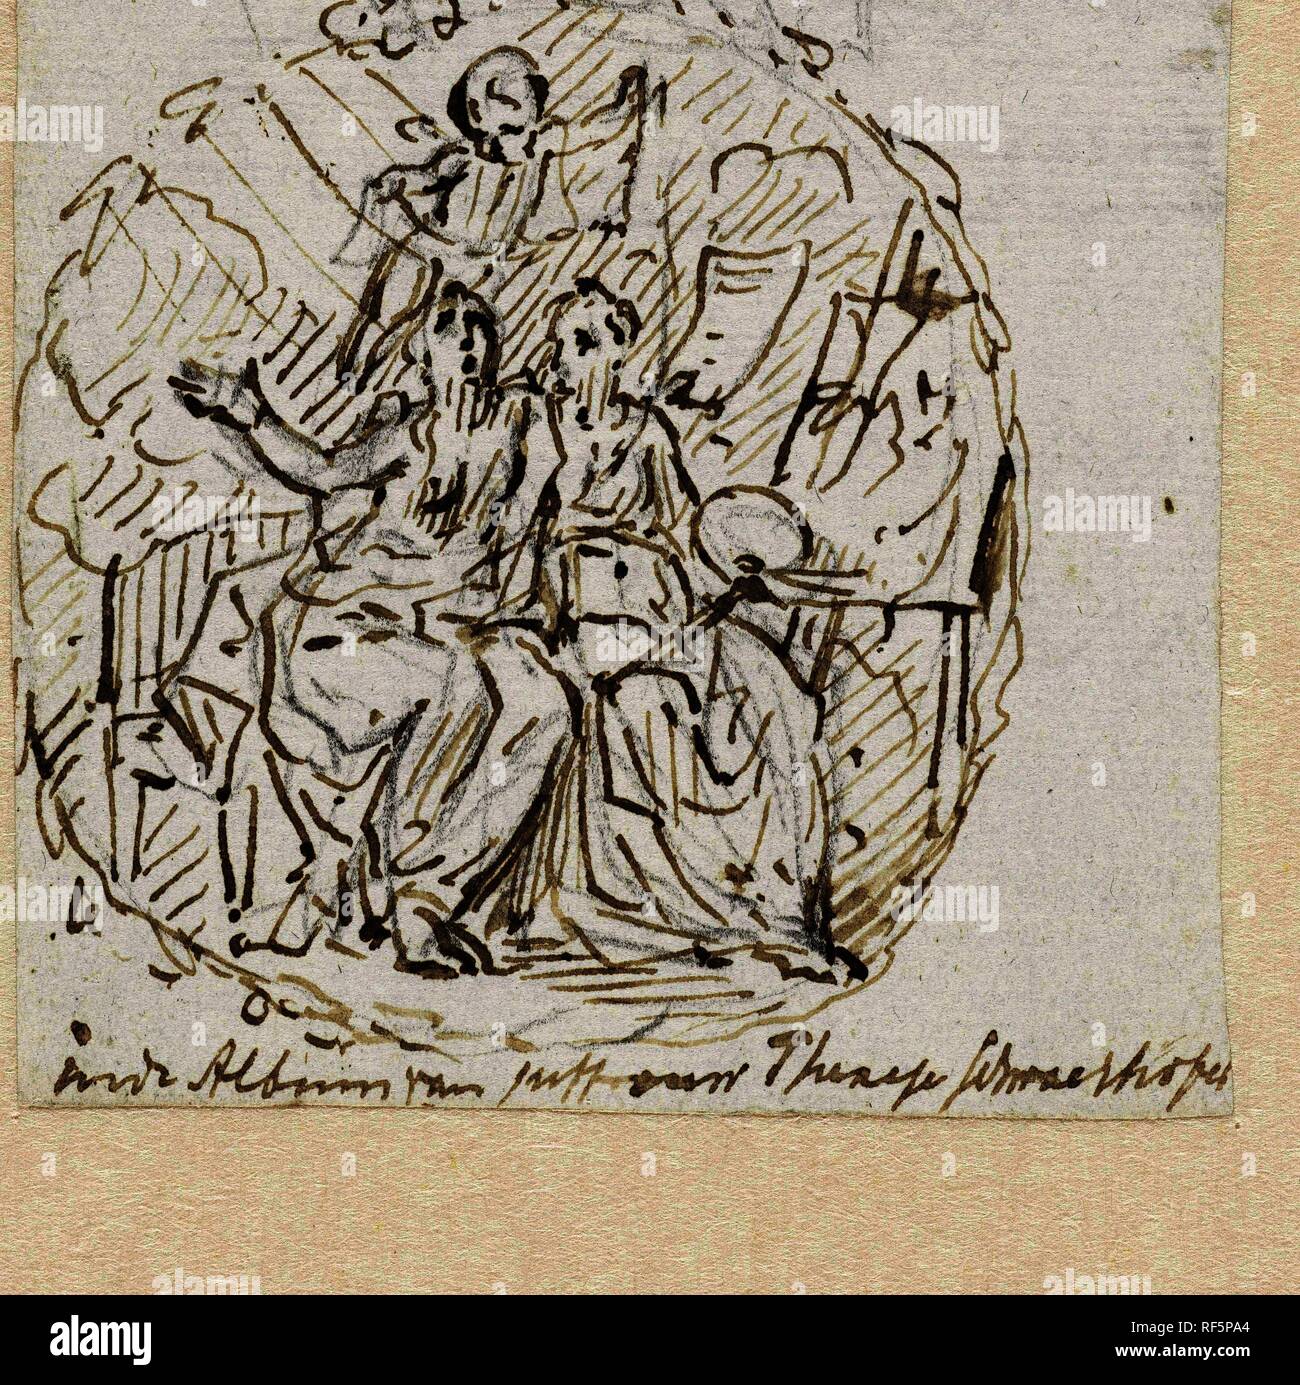 Il canto di arte e pittura. Relatore per parere: Jurriaan Andriessen. Dating: 1794. Misurazioni: h 92 mm × W 91 mm. Museo: Rijksmuseum Amsterdam. Foto Stock